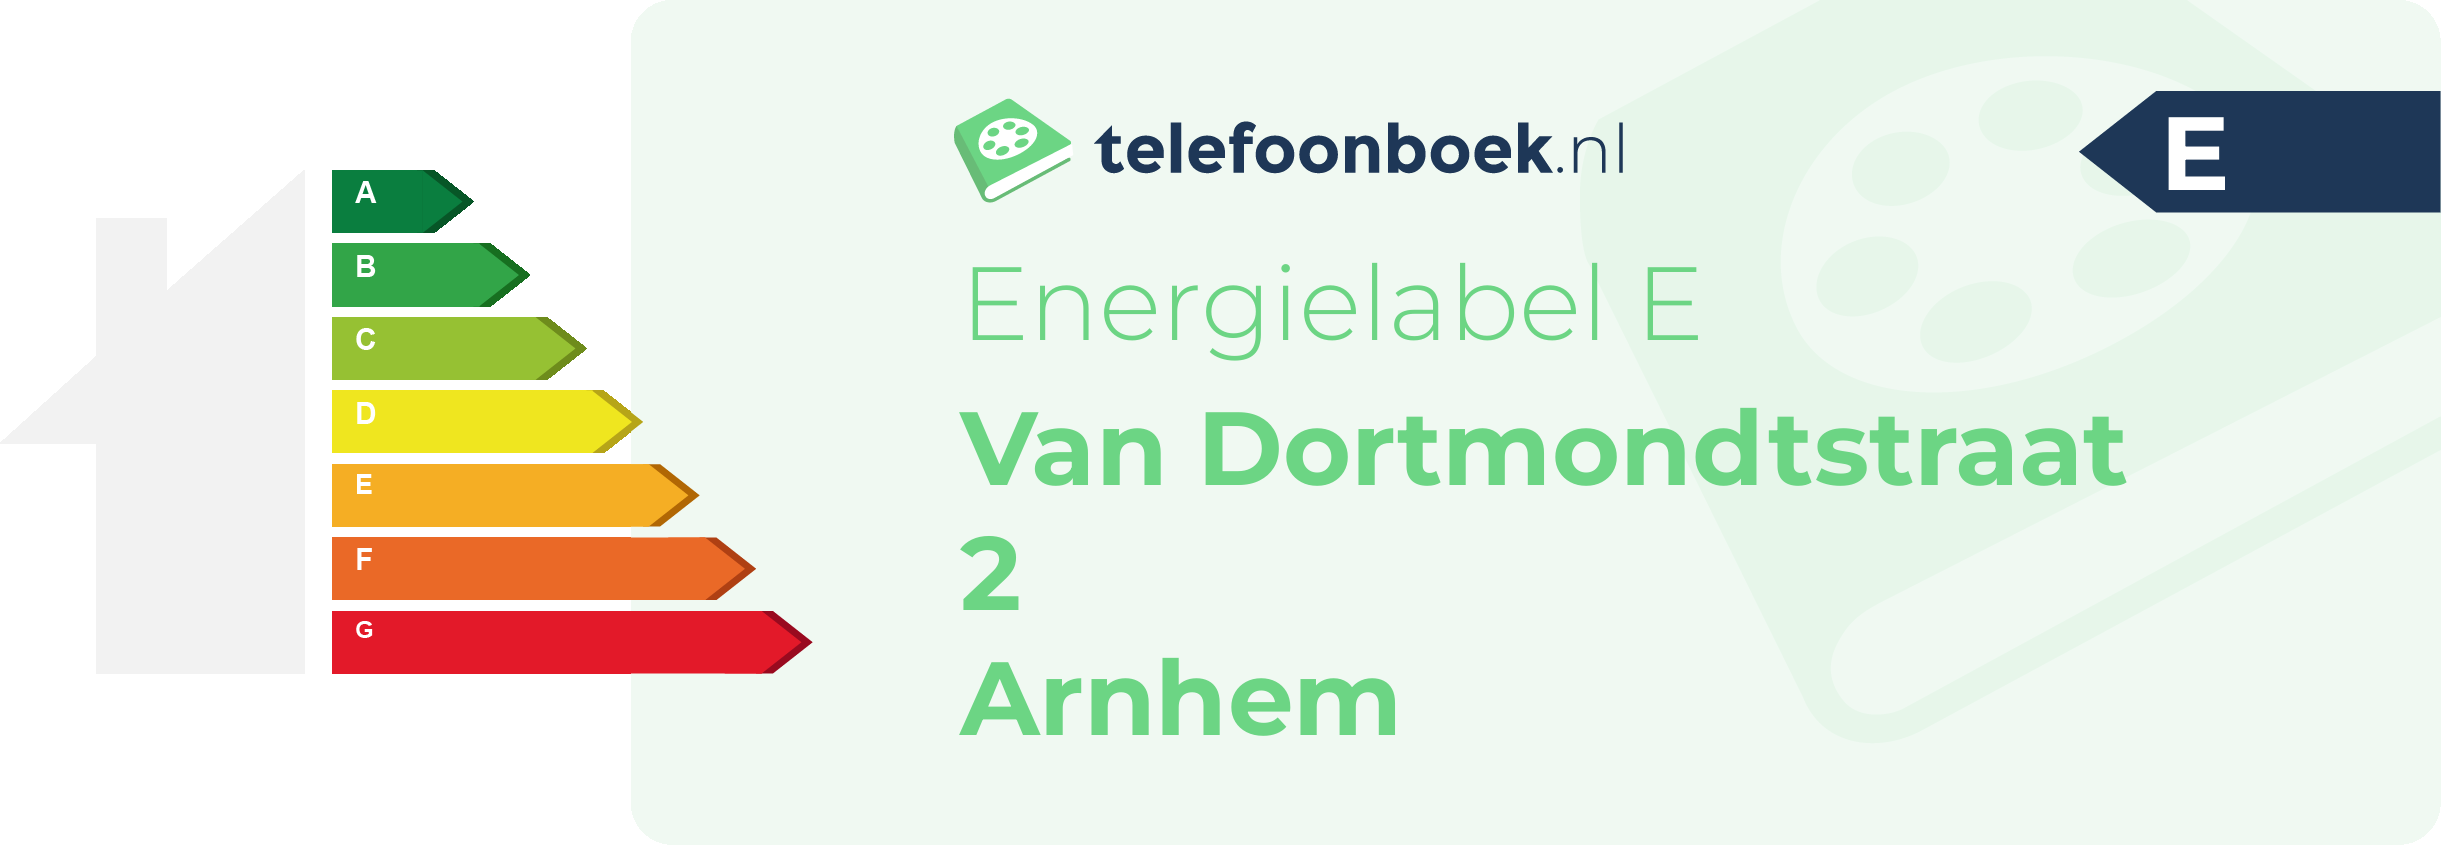 Energielabel Van Dortmondtstraat 2 Arnhem